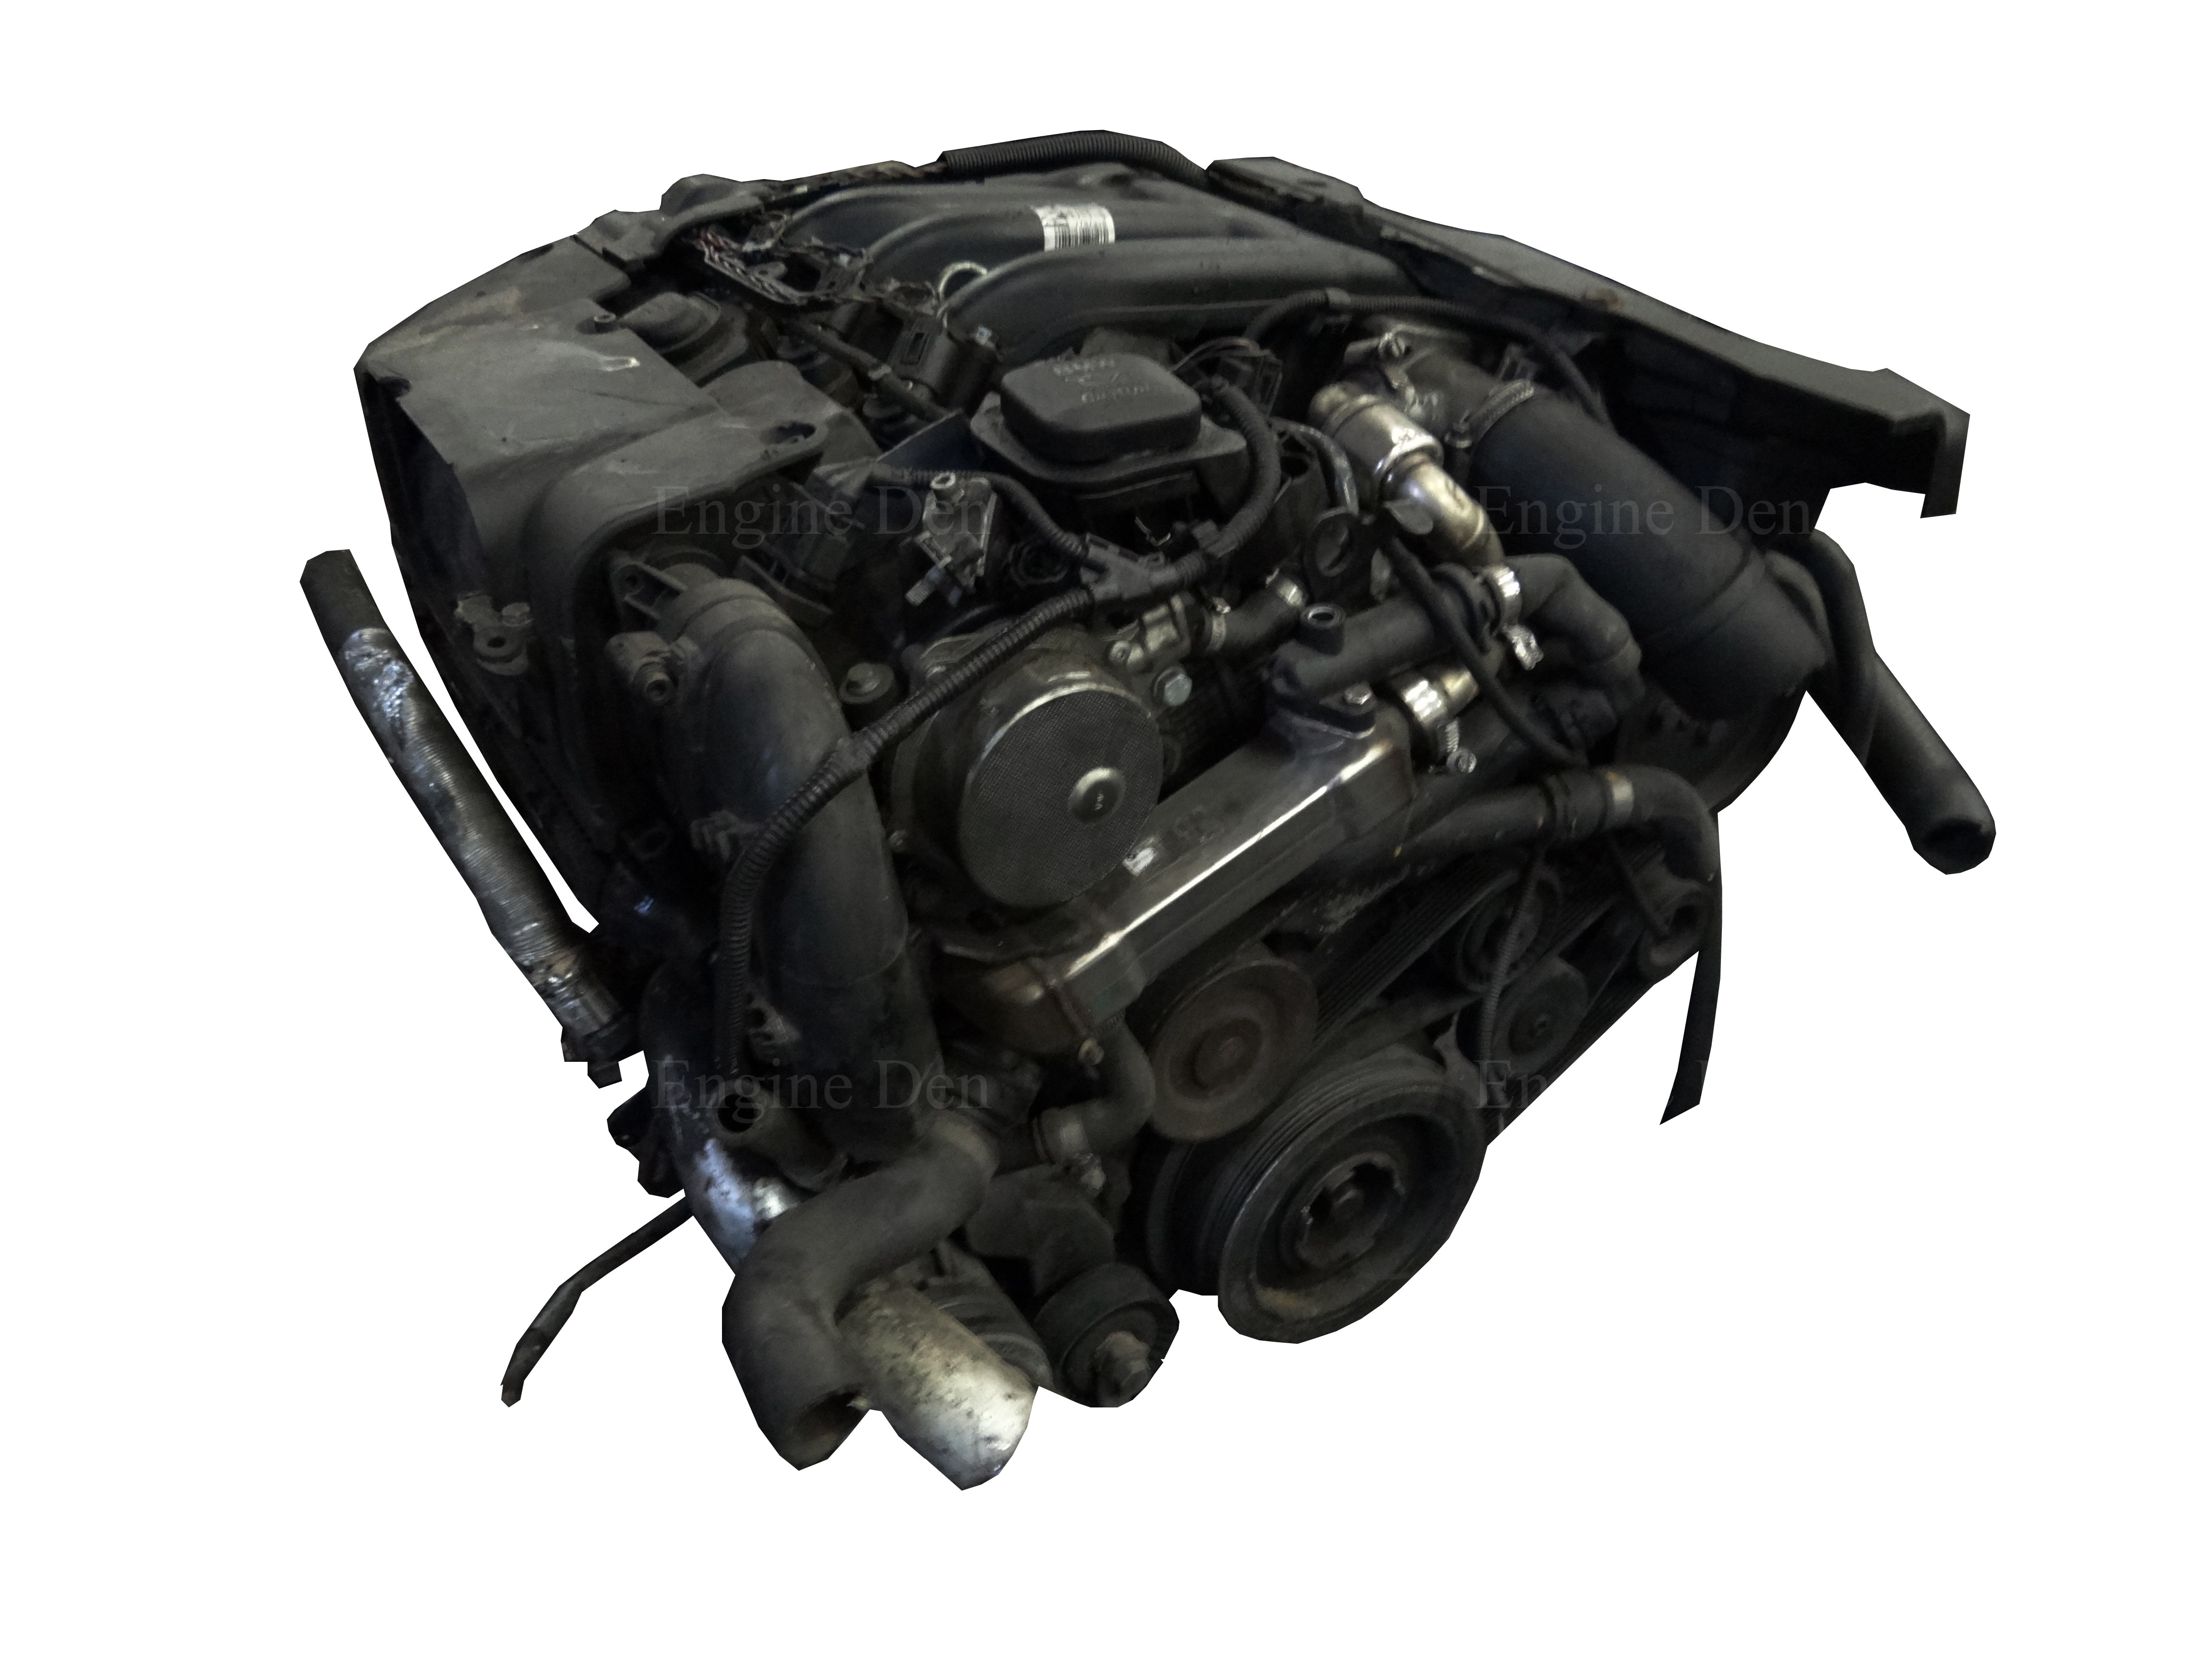 BMW M47-E90-320 Diesel Engine – Engineden